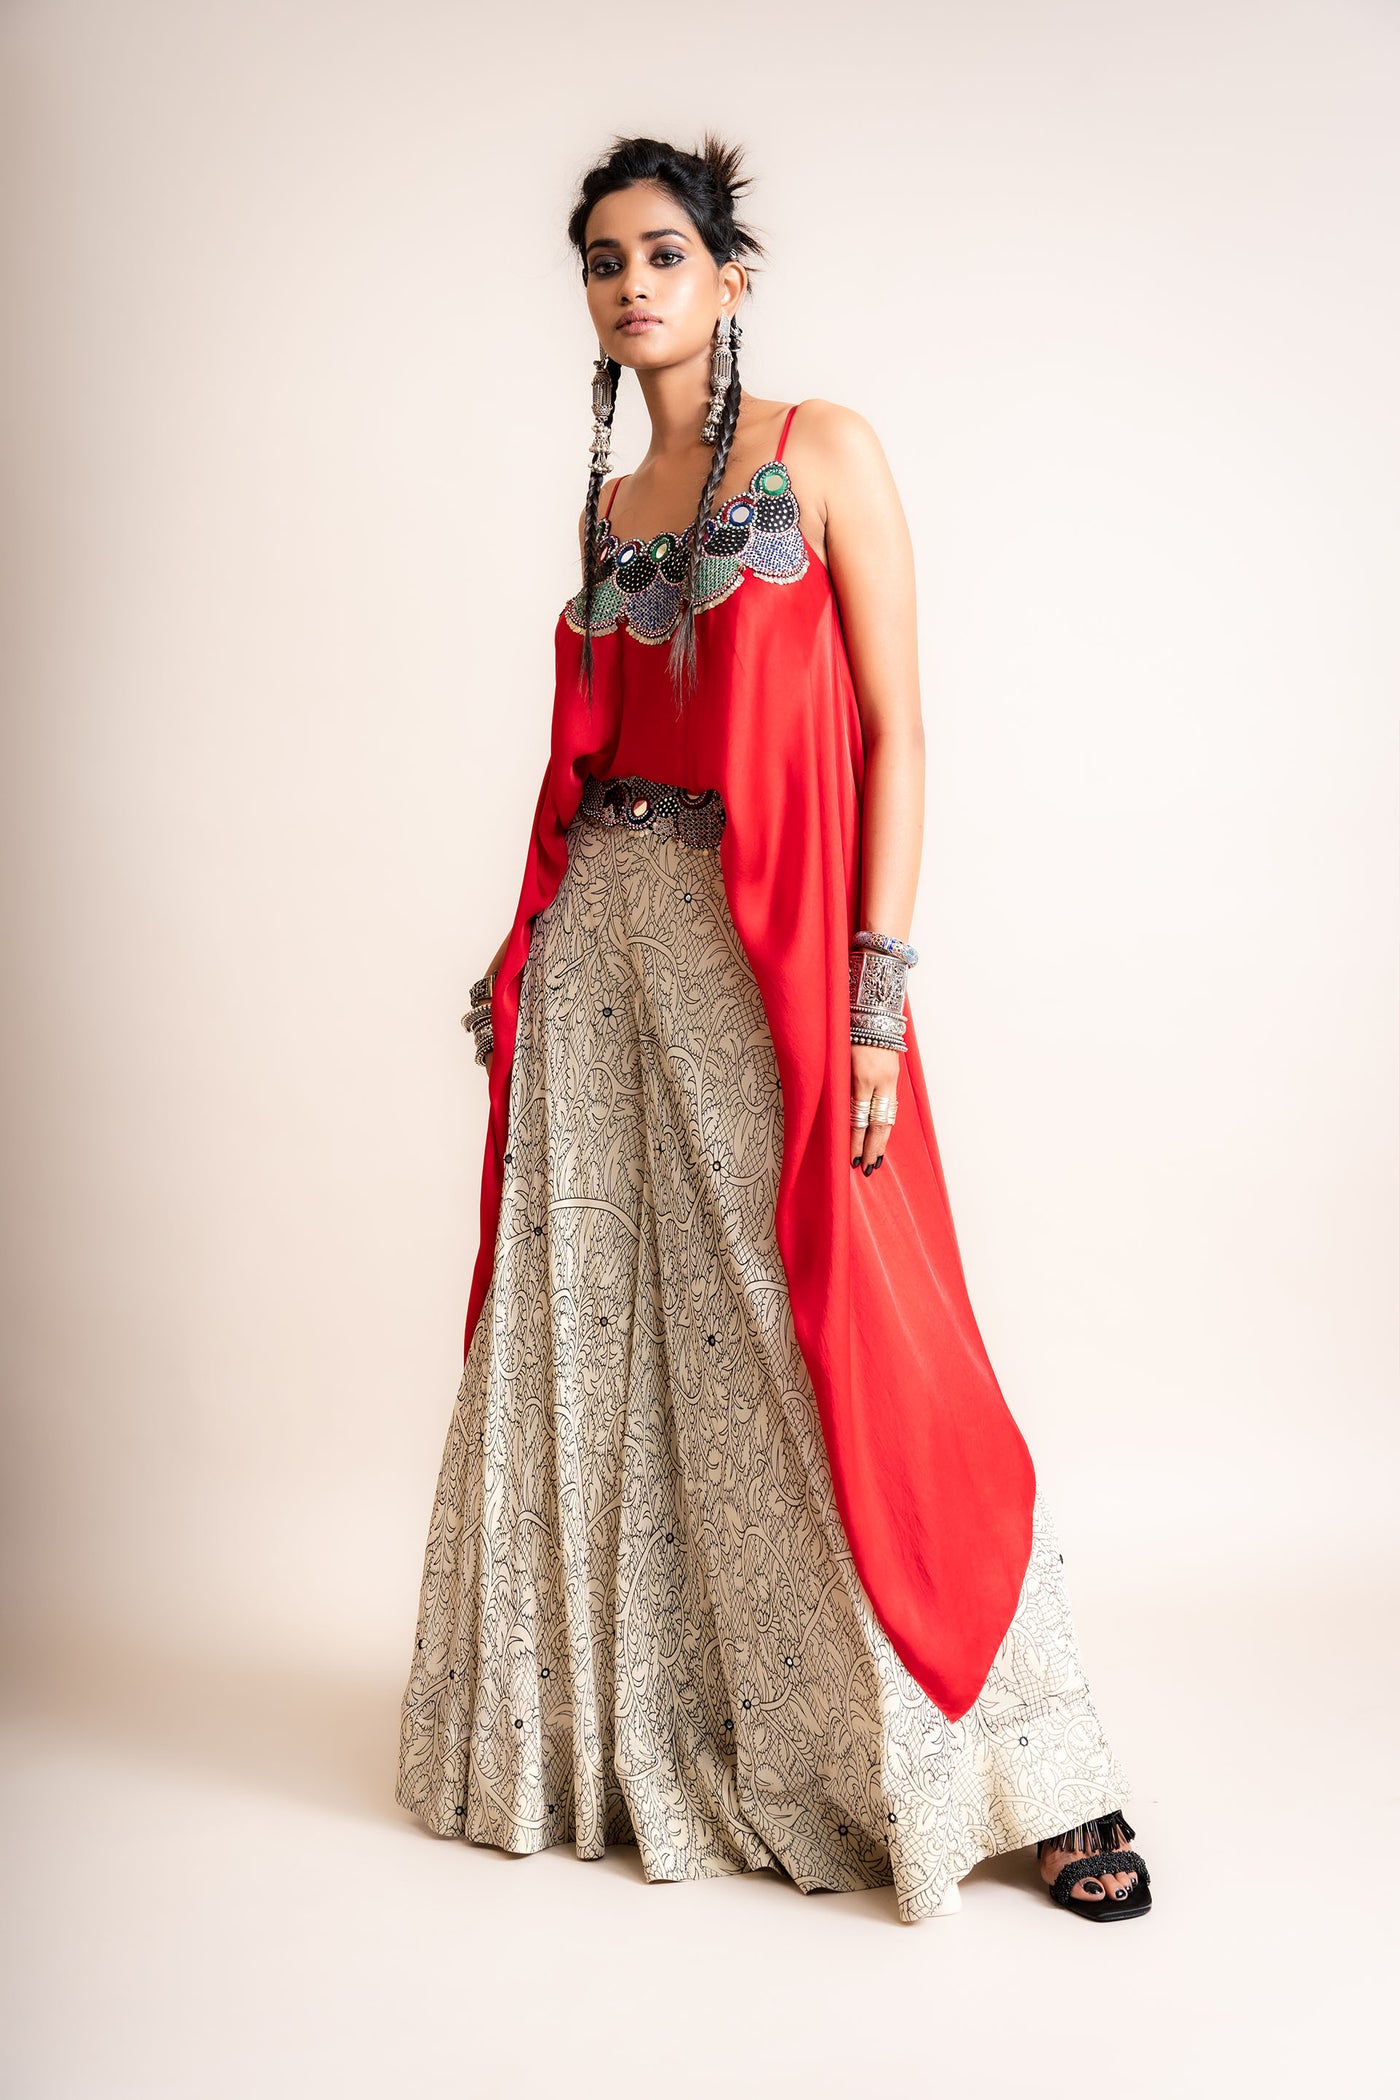 Nupur Kanoi Singlet Top & Pants Set red designer fashion online shopping melange singapore